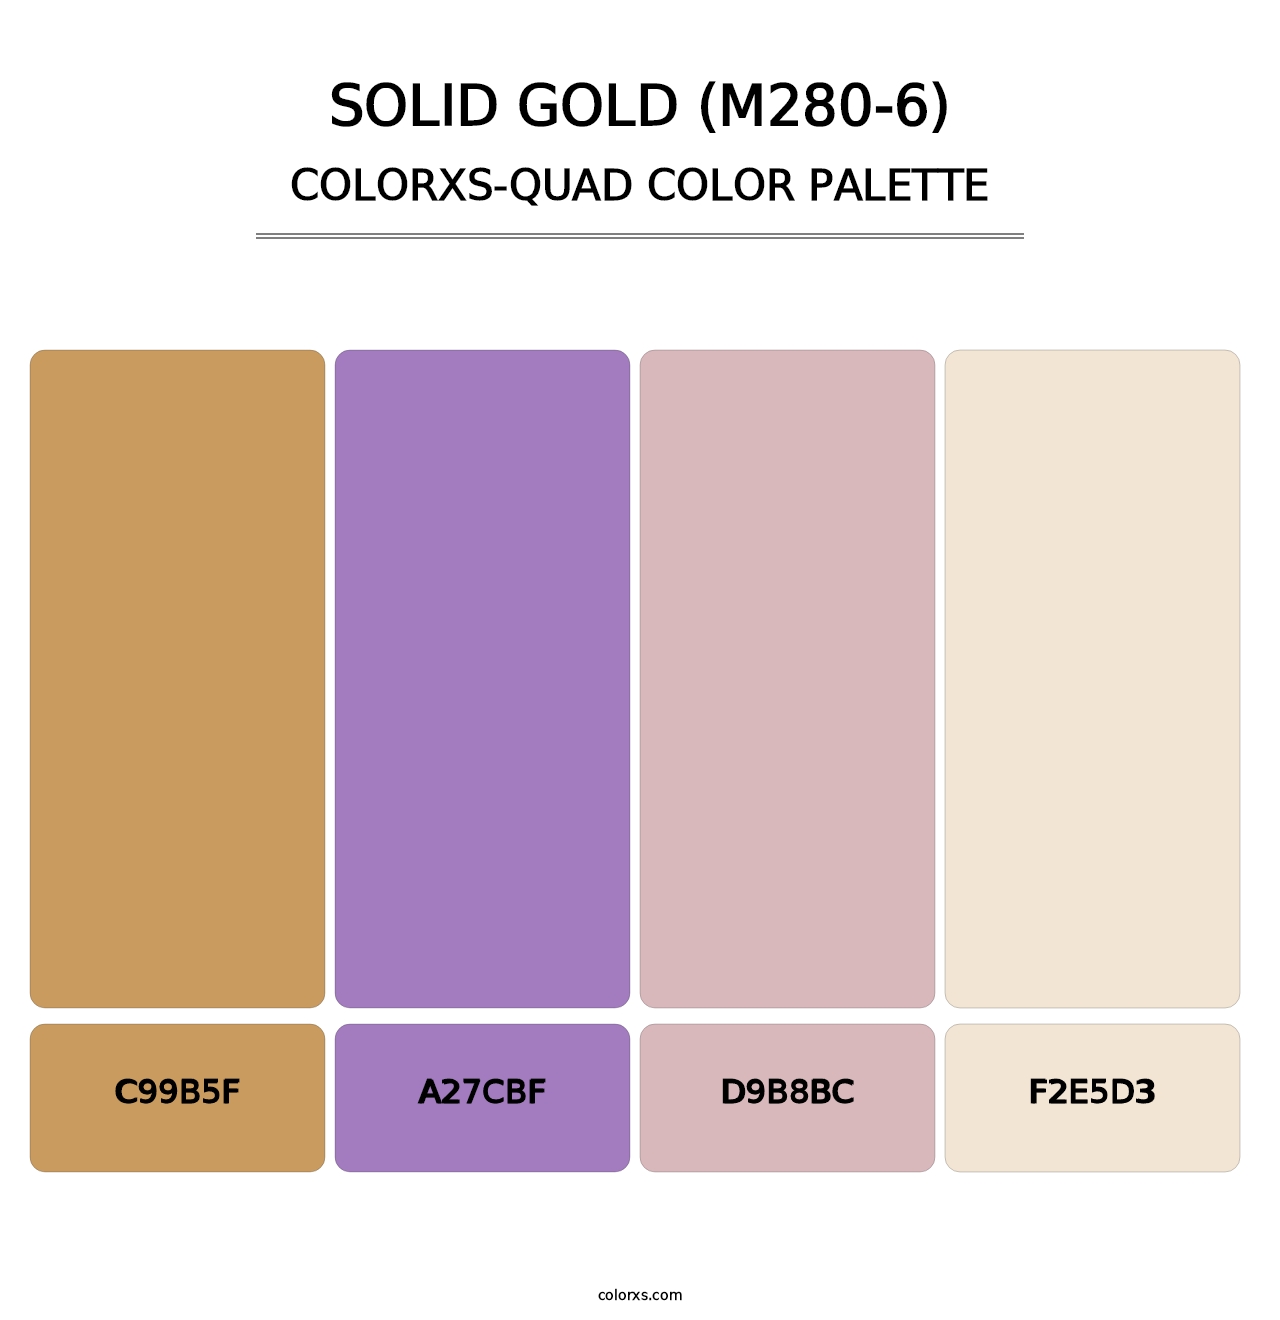 Solid Gold (M280-6) - Colorxs Quad Palette